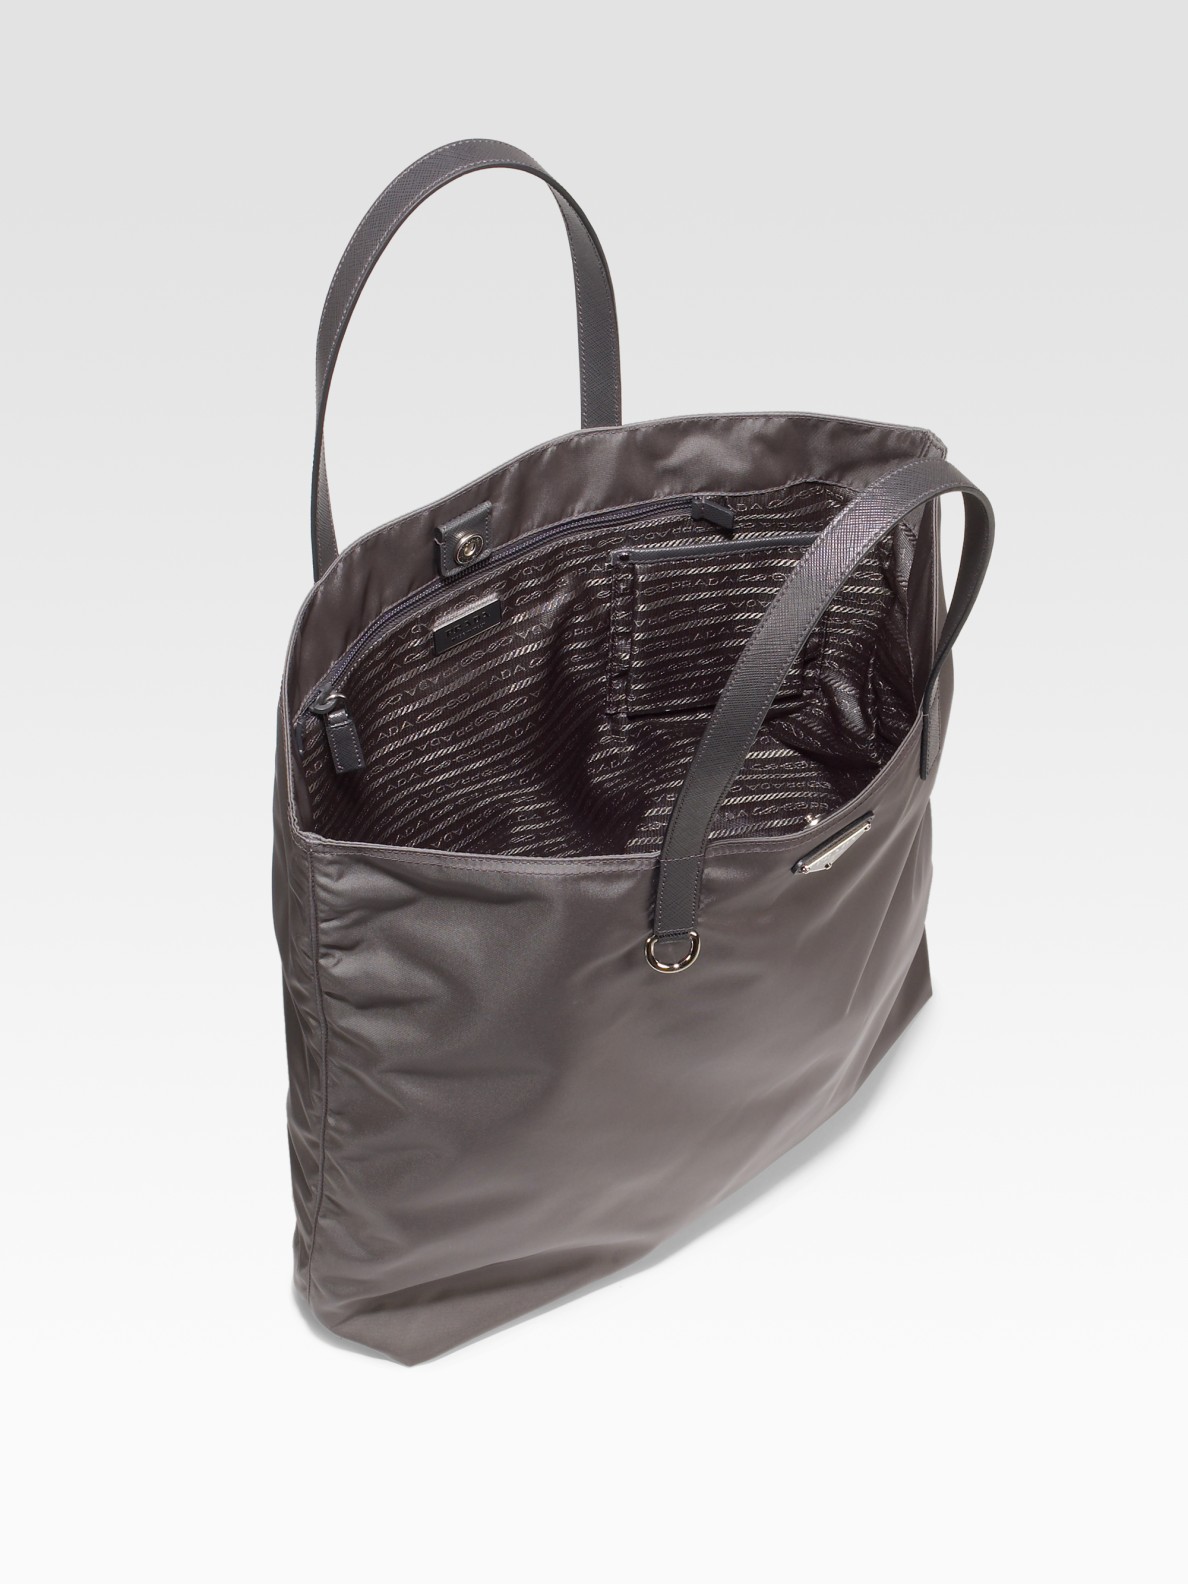 Prada Vela Nylon Tote Bag in Gray | Lyst